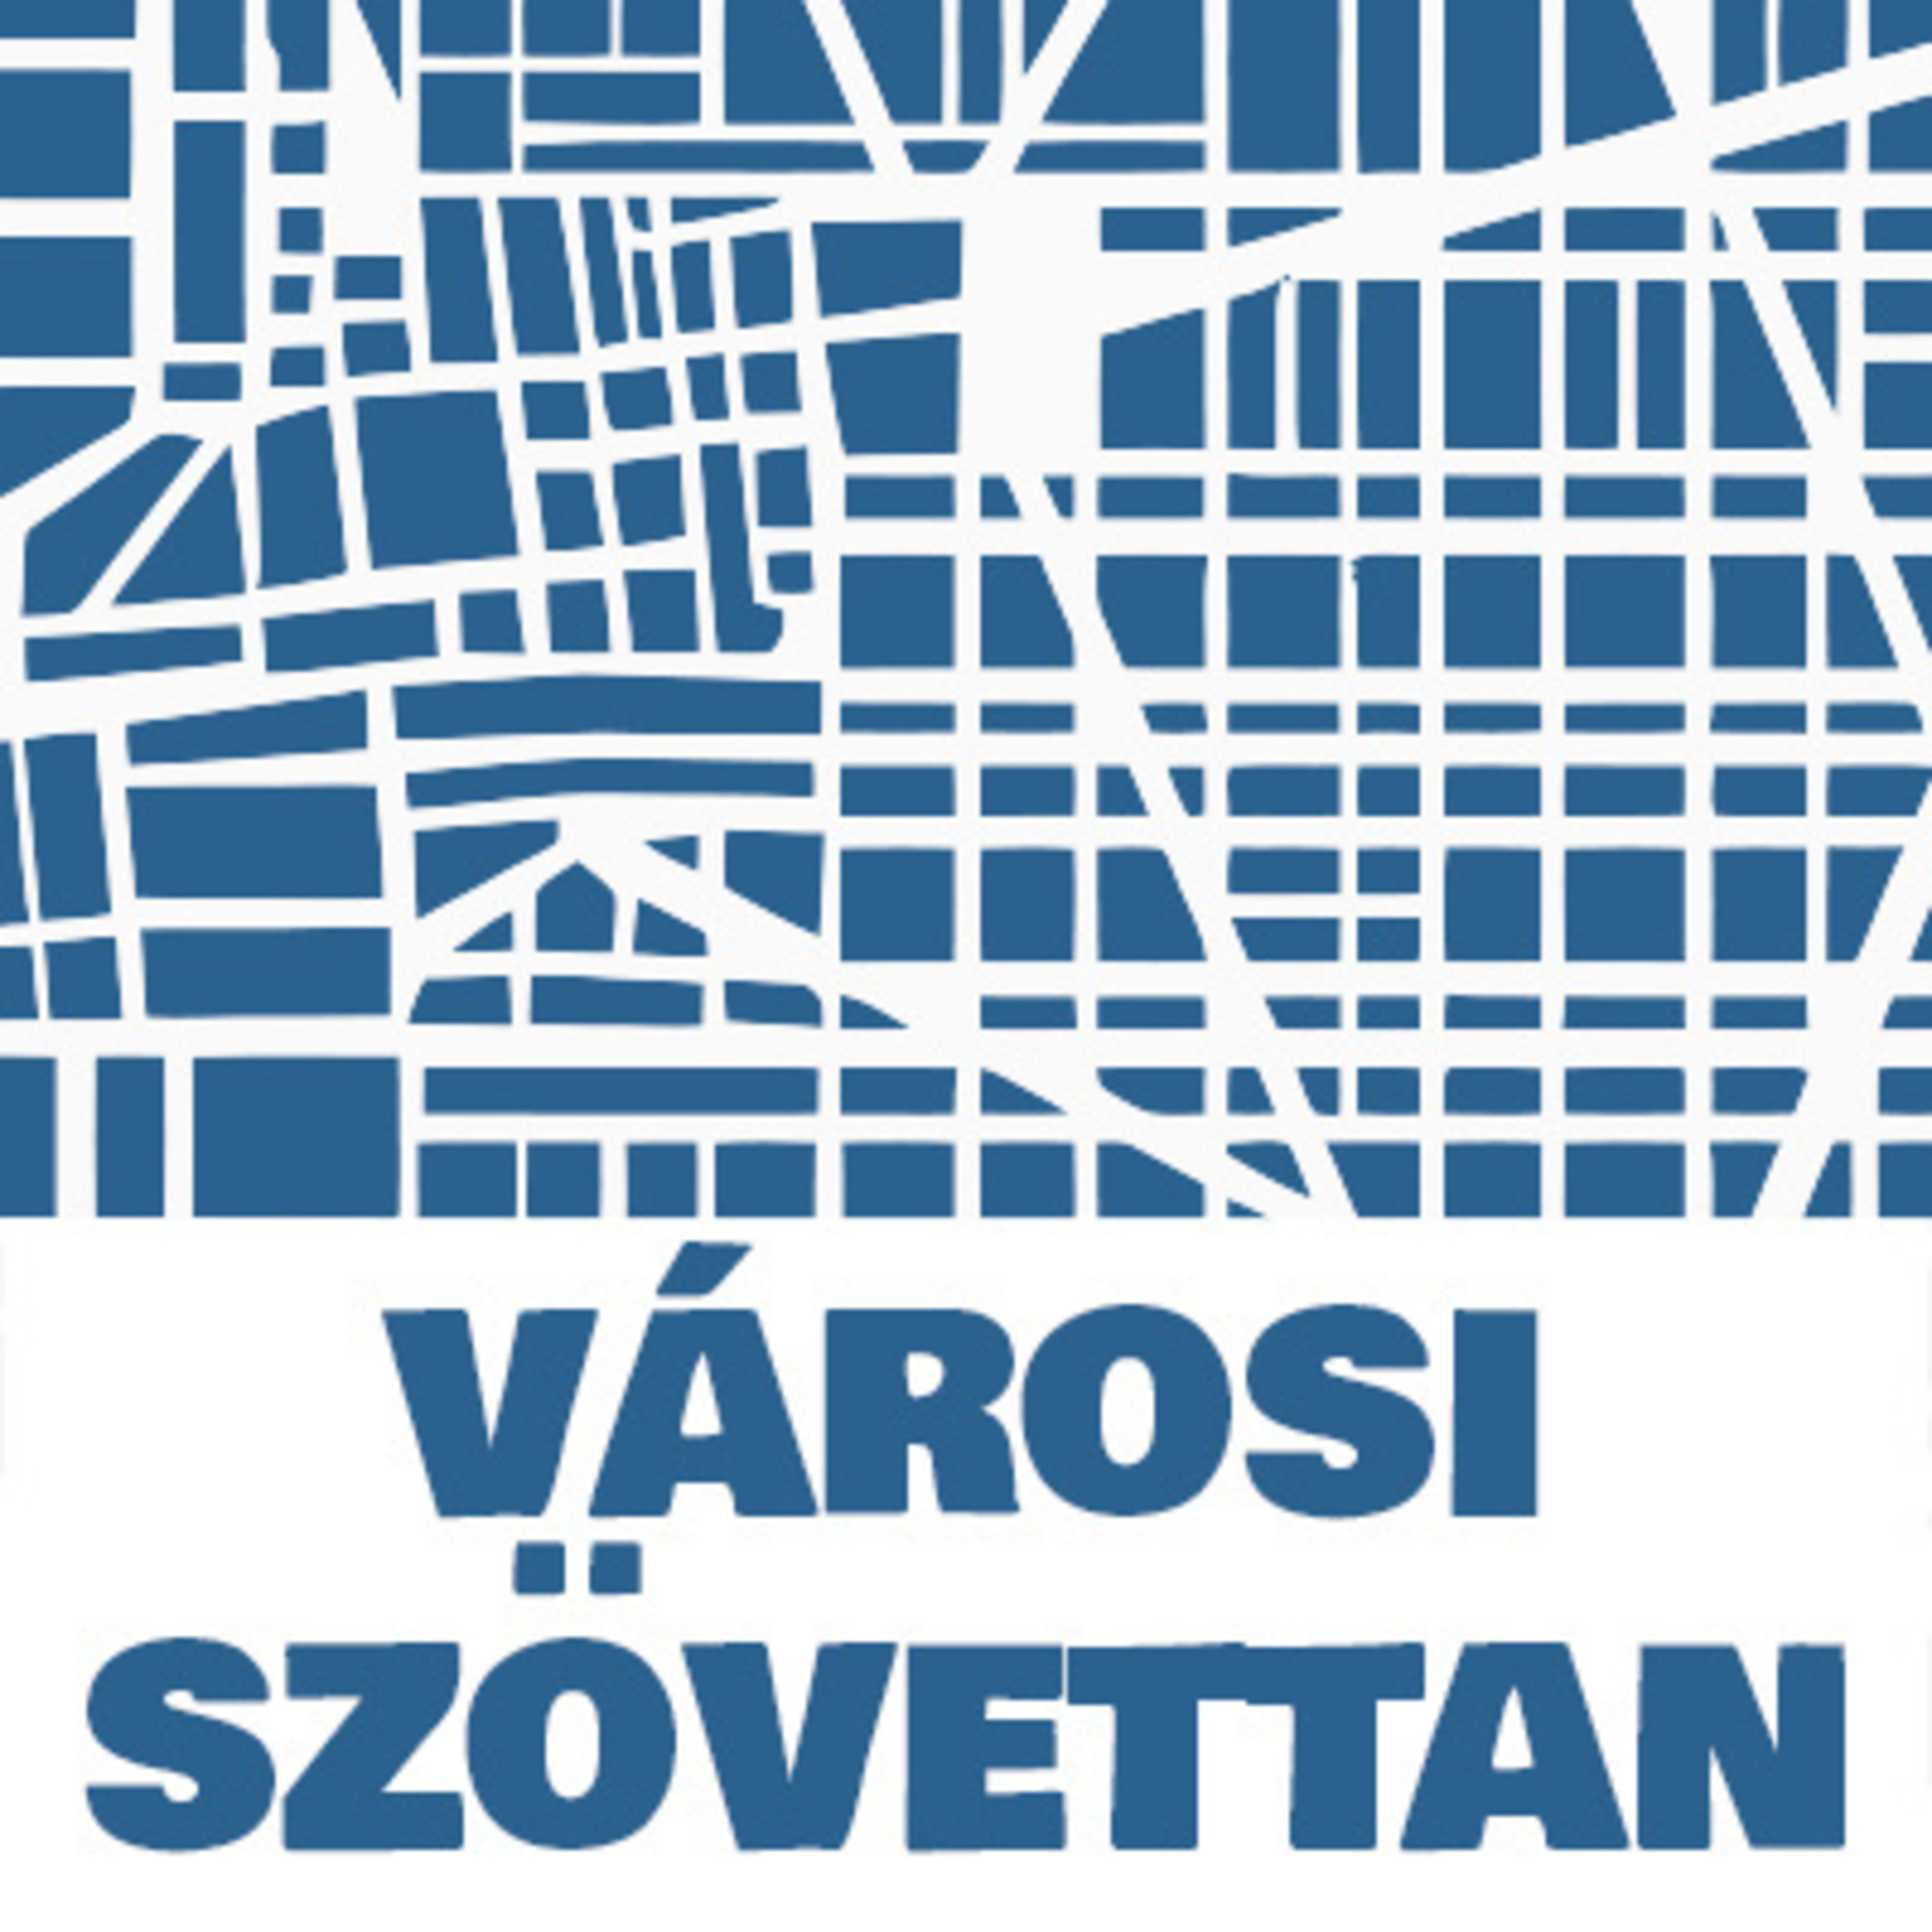 Városi szövettan | Vitézy Dávid: Az autók kiszorítása a városból nem budapesti, hanem világtendencia